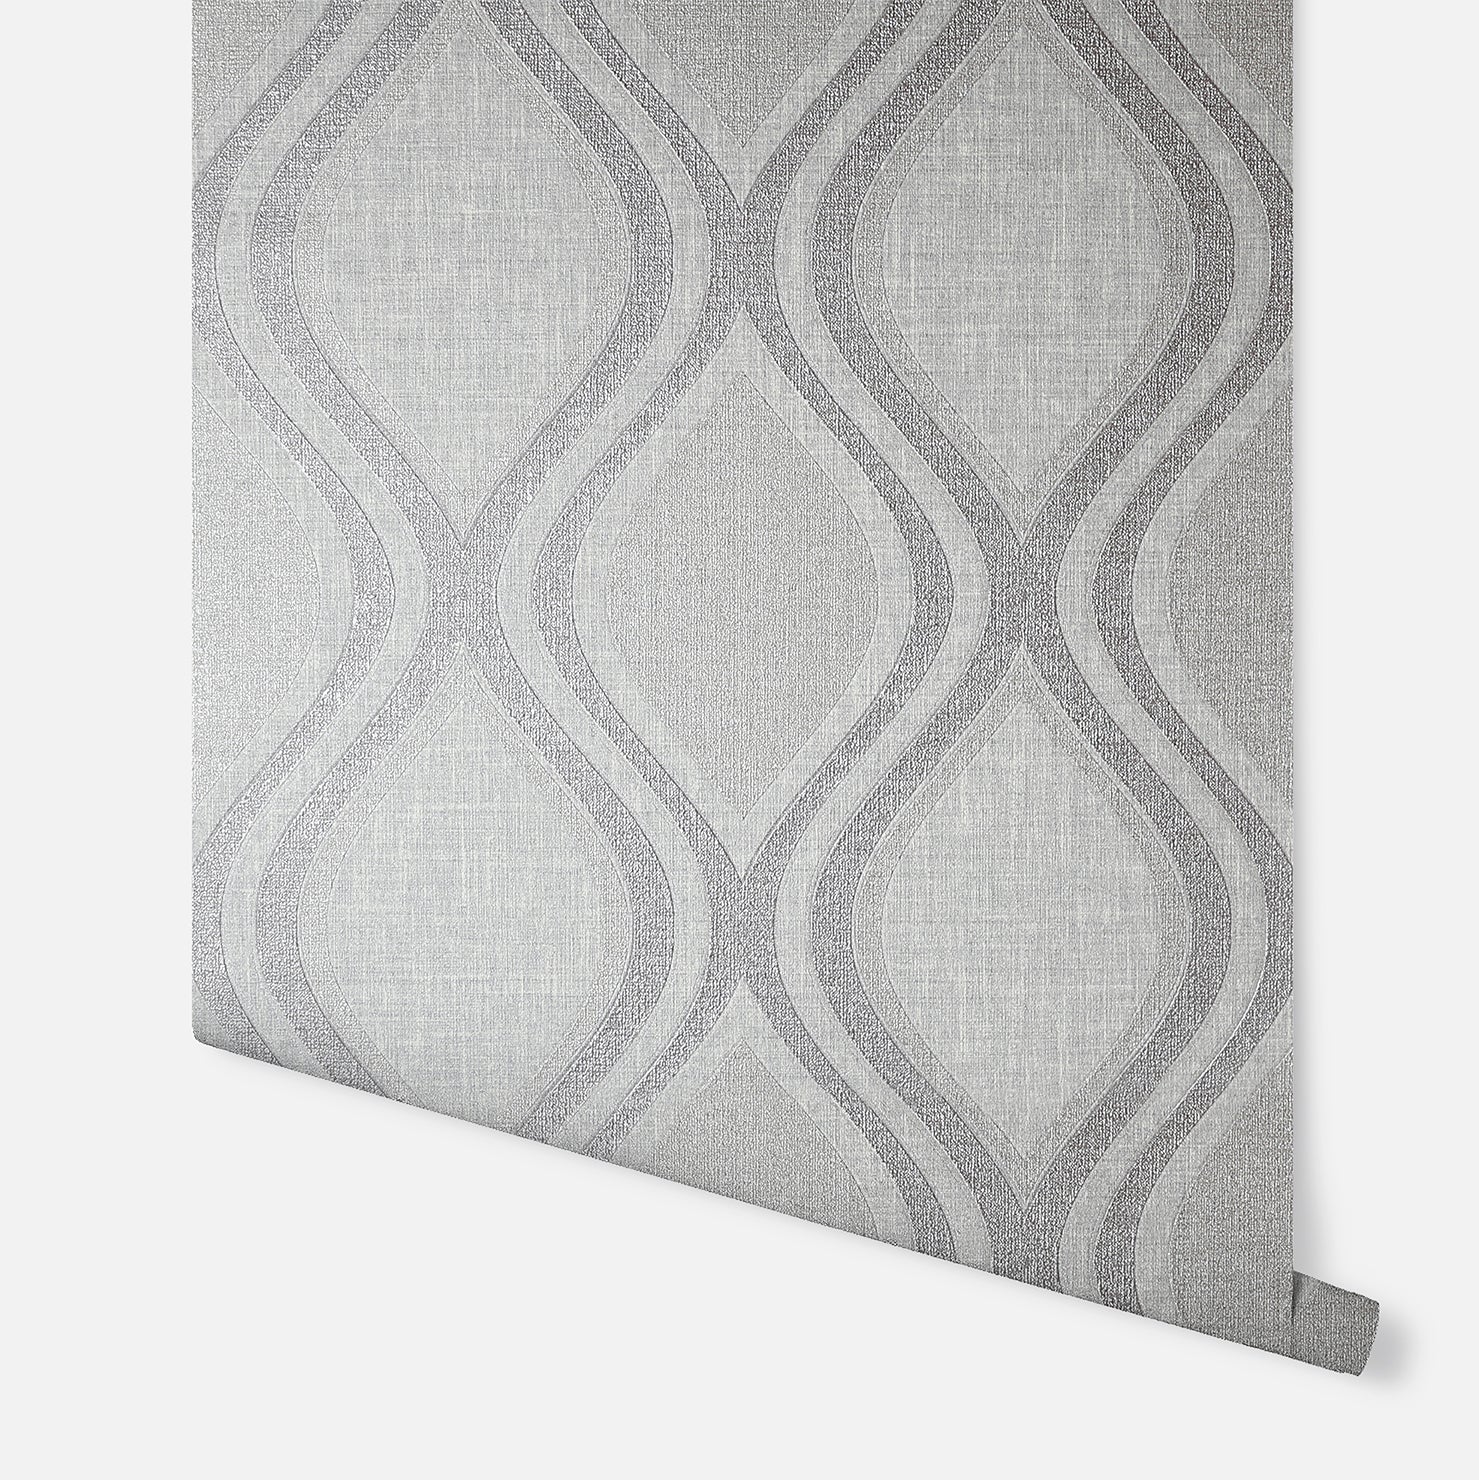 Curve Grey Wallpaper